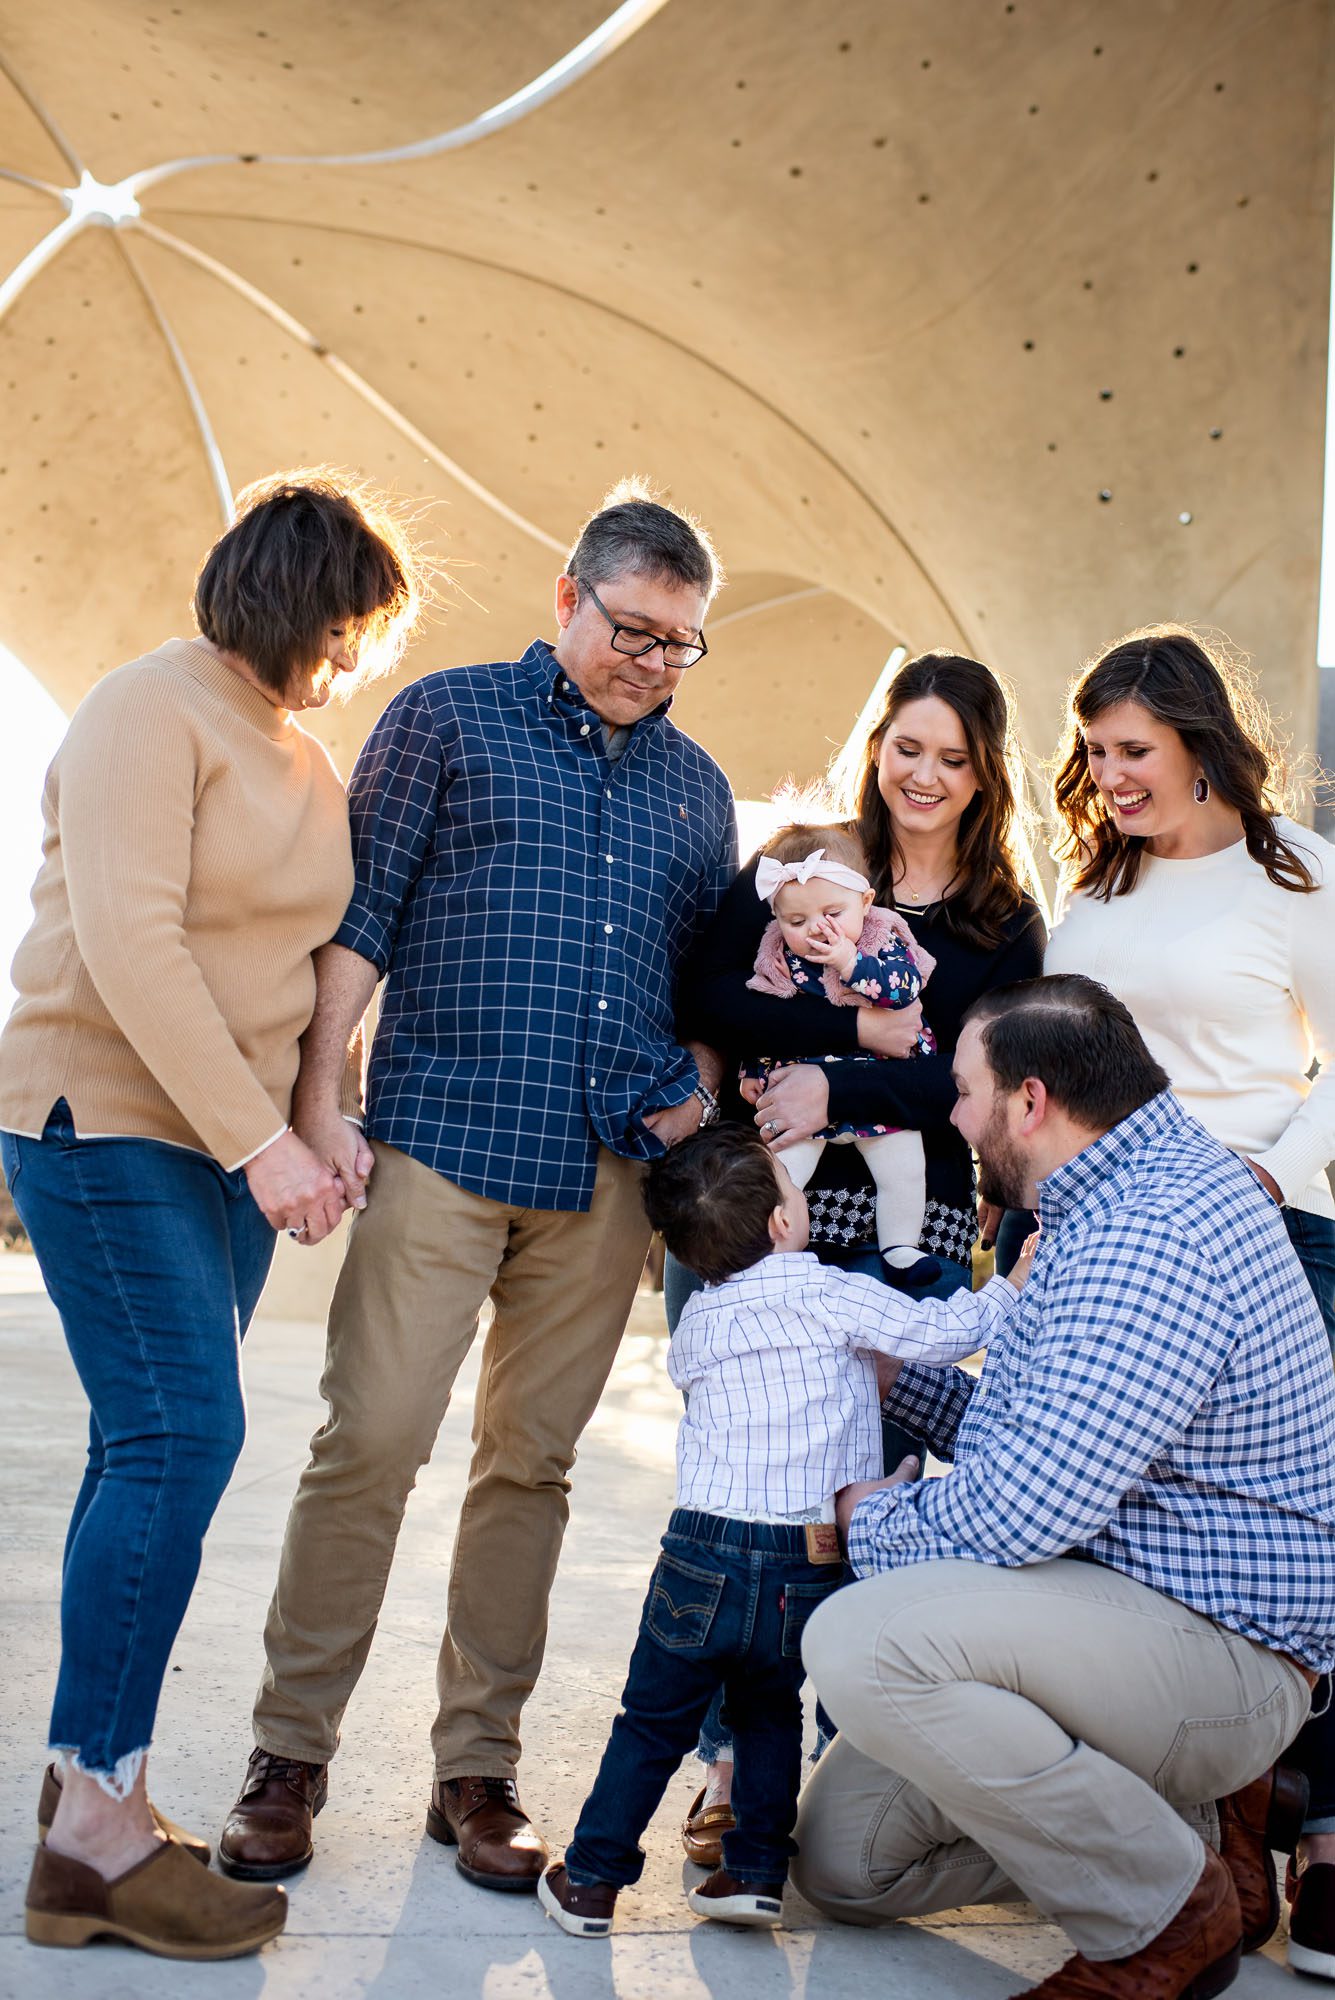 Family gathered around baby, San Antonio lifestyle family photographer